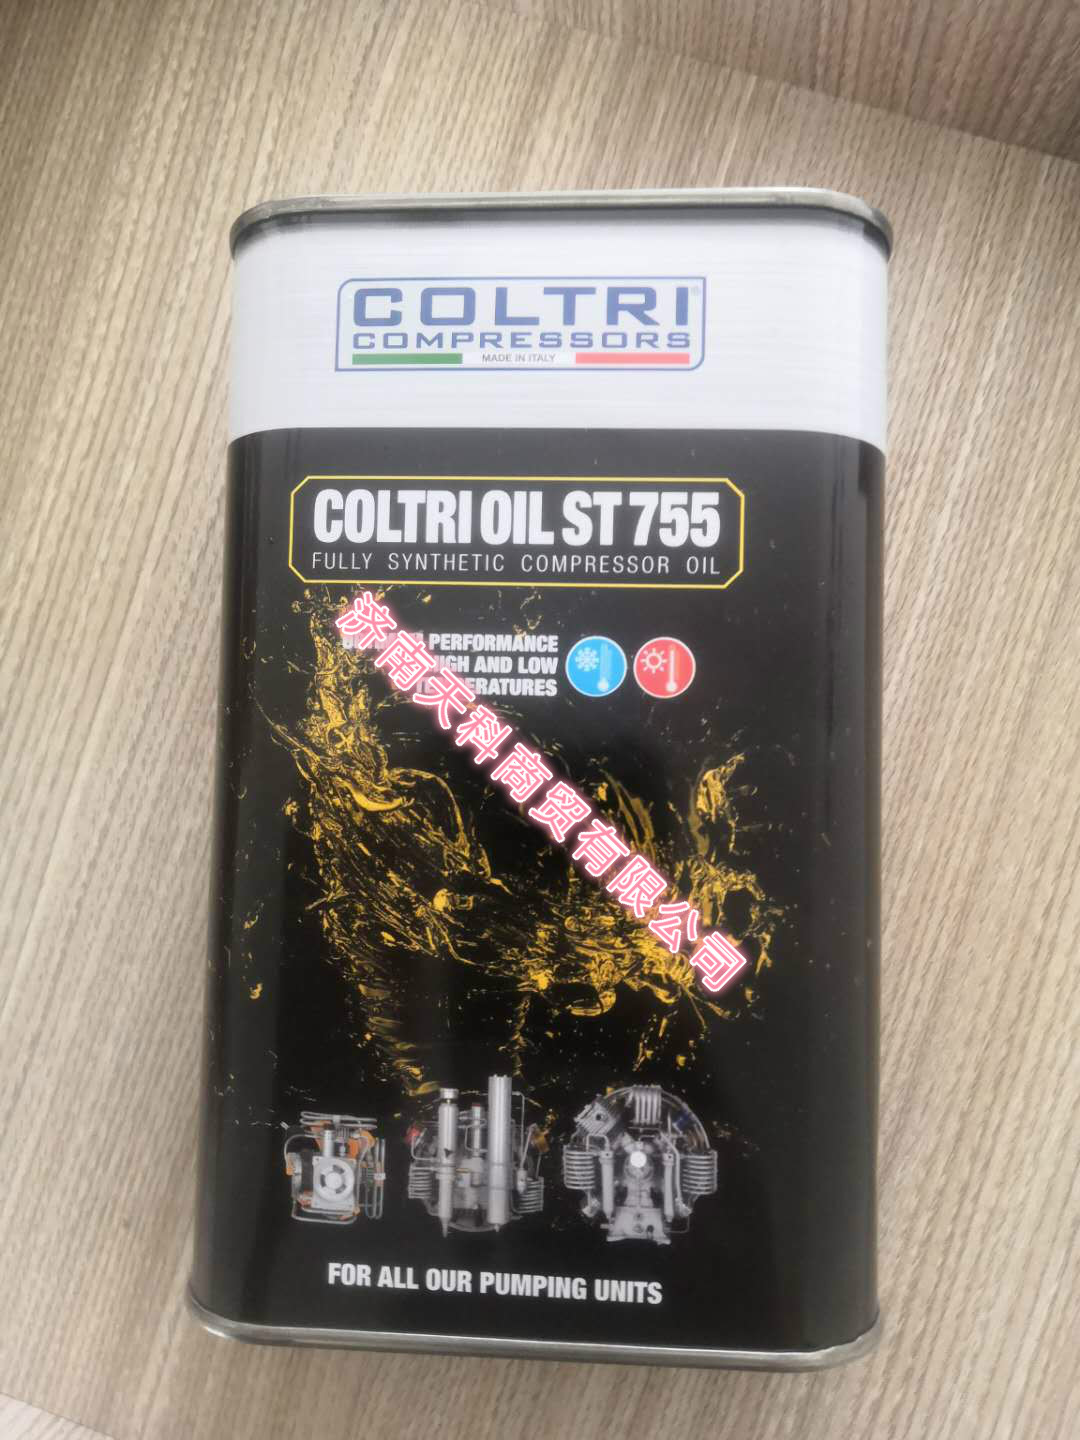 科尔奇CE750升级为ST755合成压缩机机油